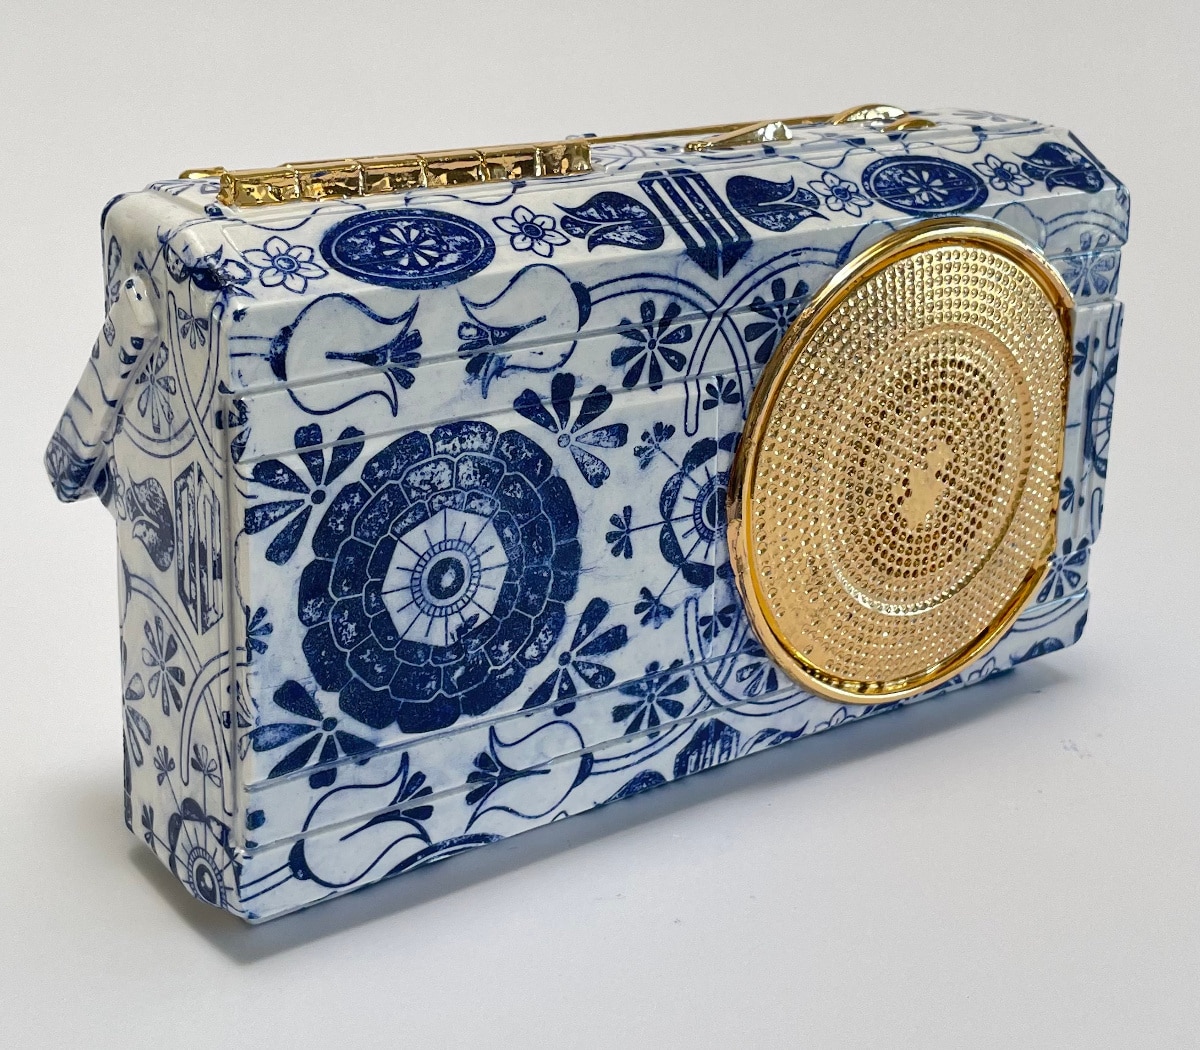 Radio made of porcelain by Brock DeBoer